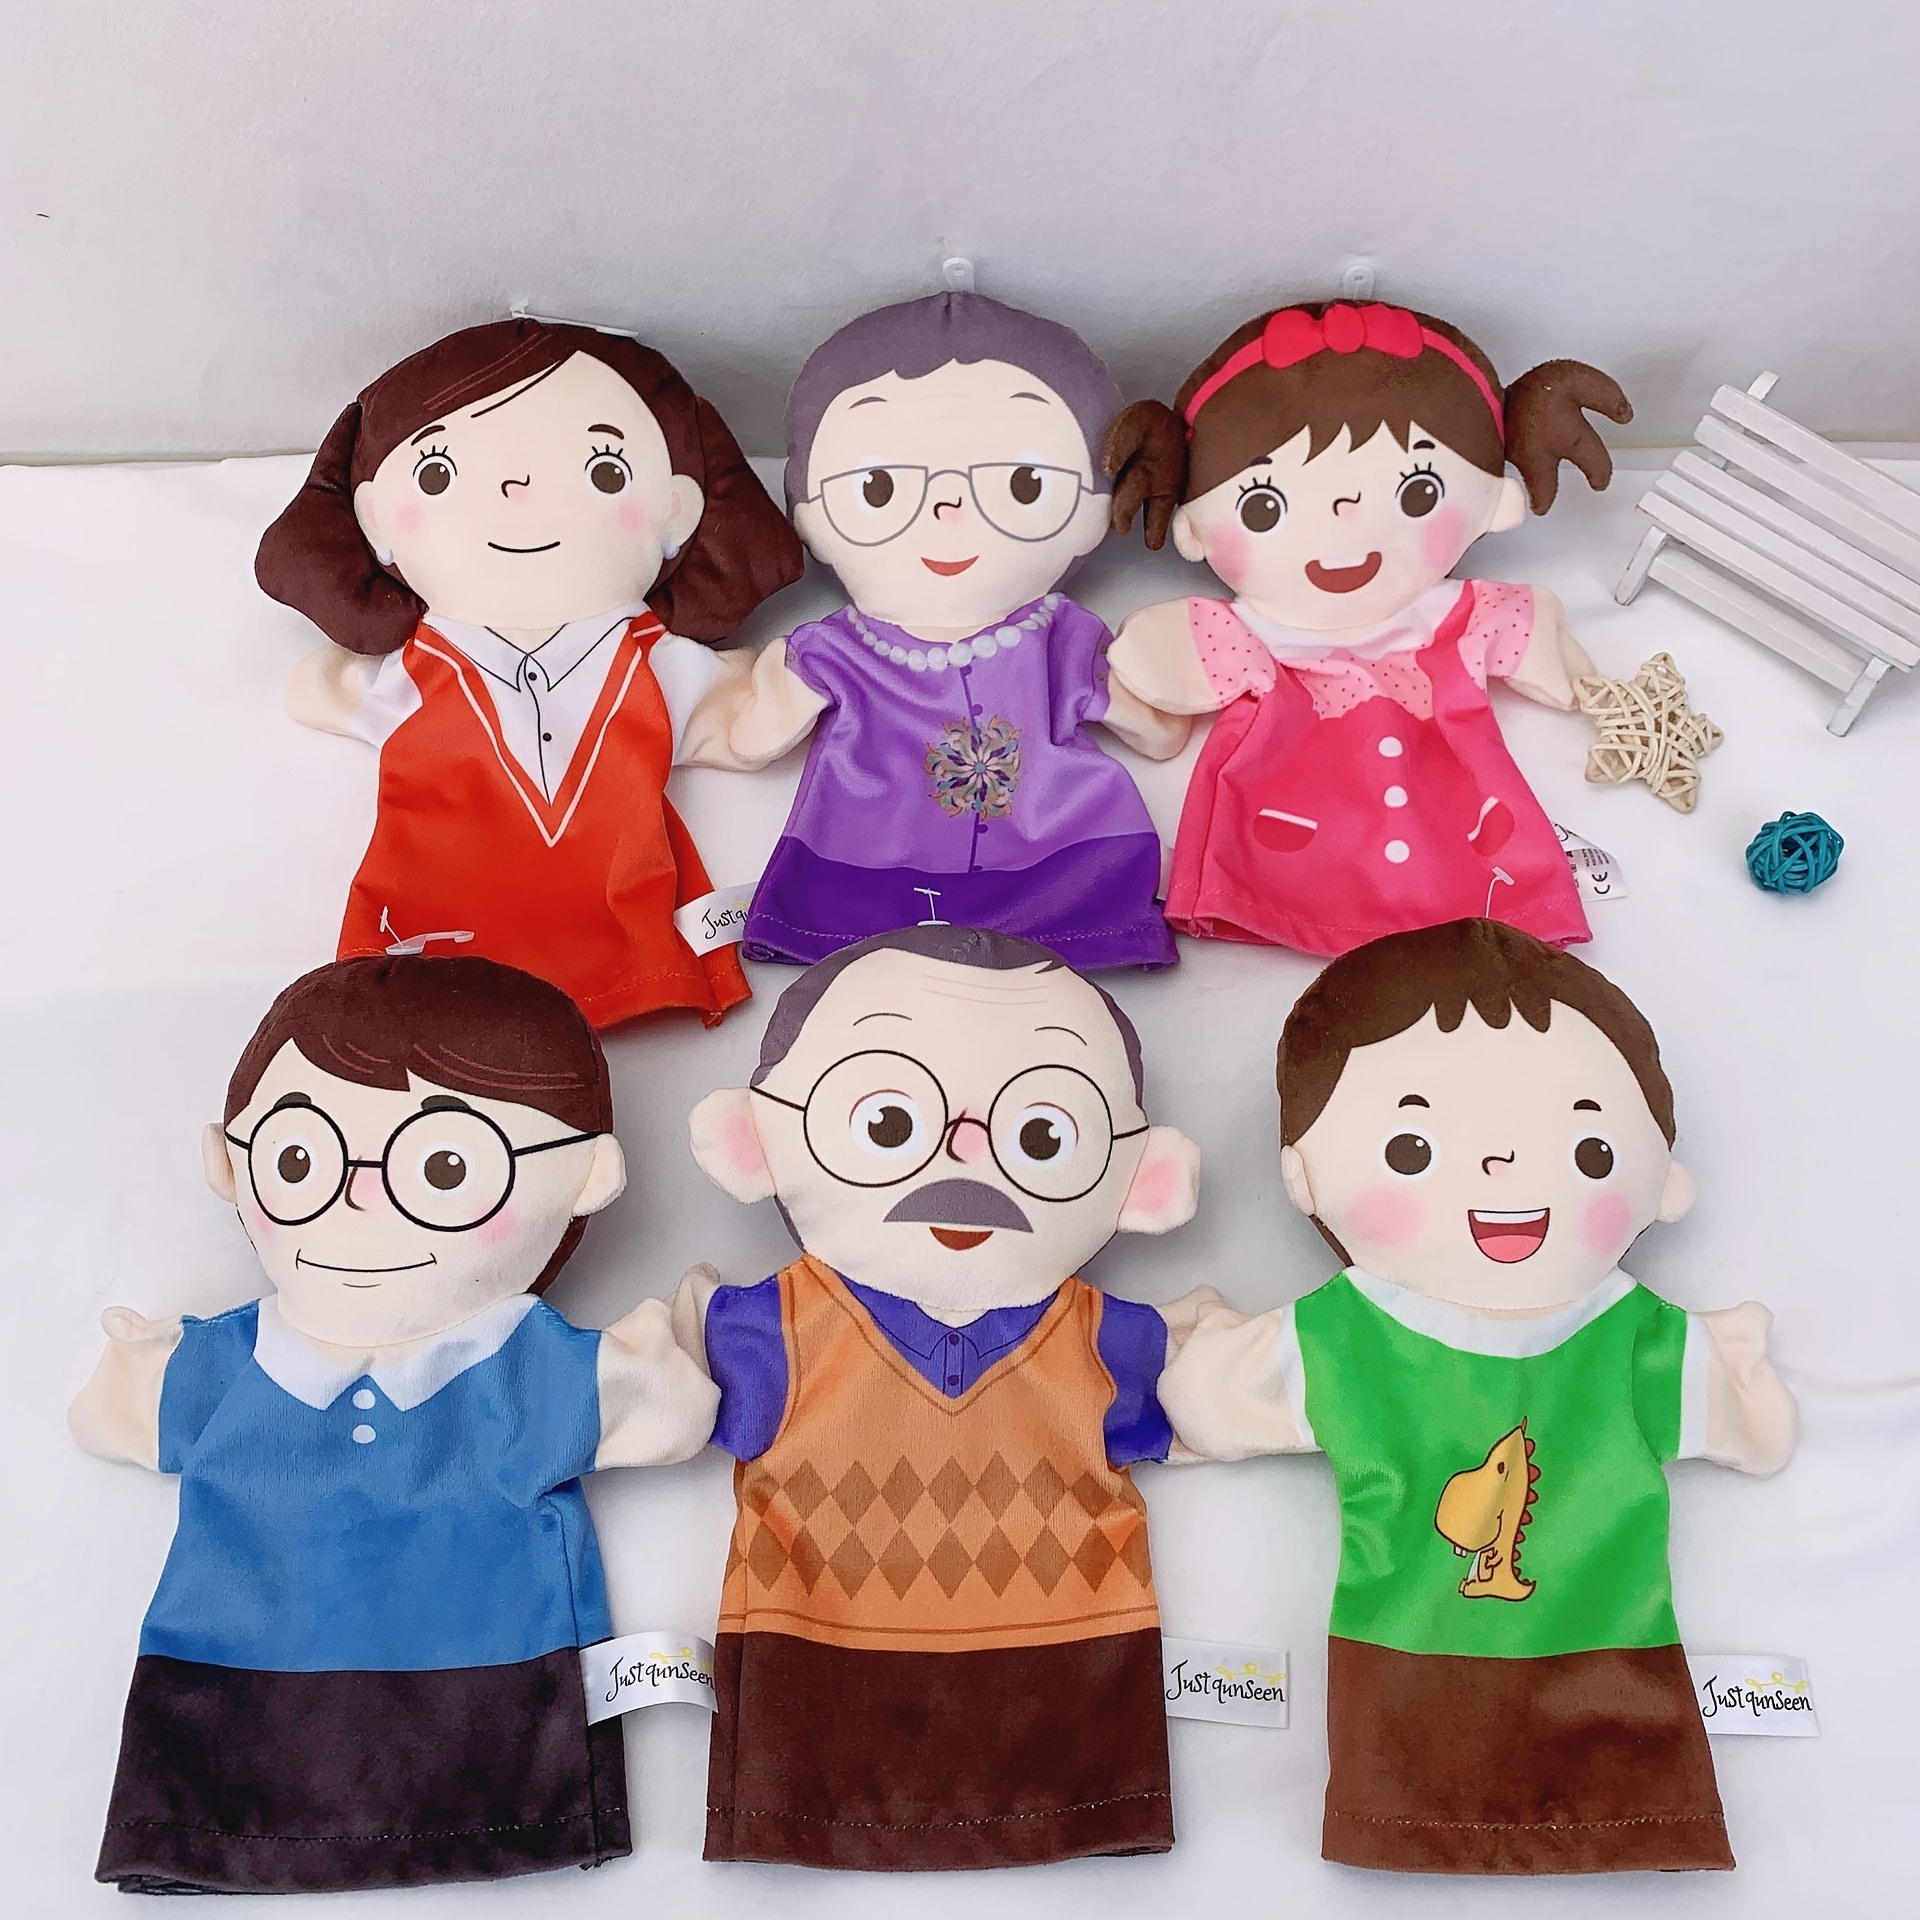 Jeffy Puppet Cheap Jiffy Hand Puppet Plush Toy 23 Stuffed Doll Kids Gift